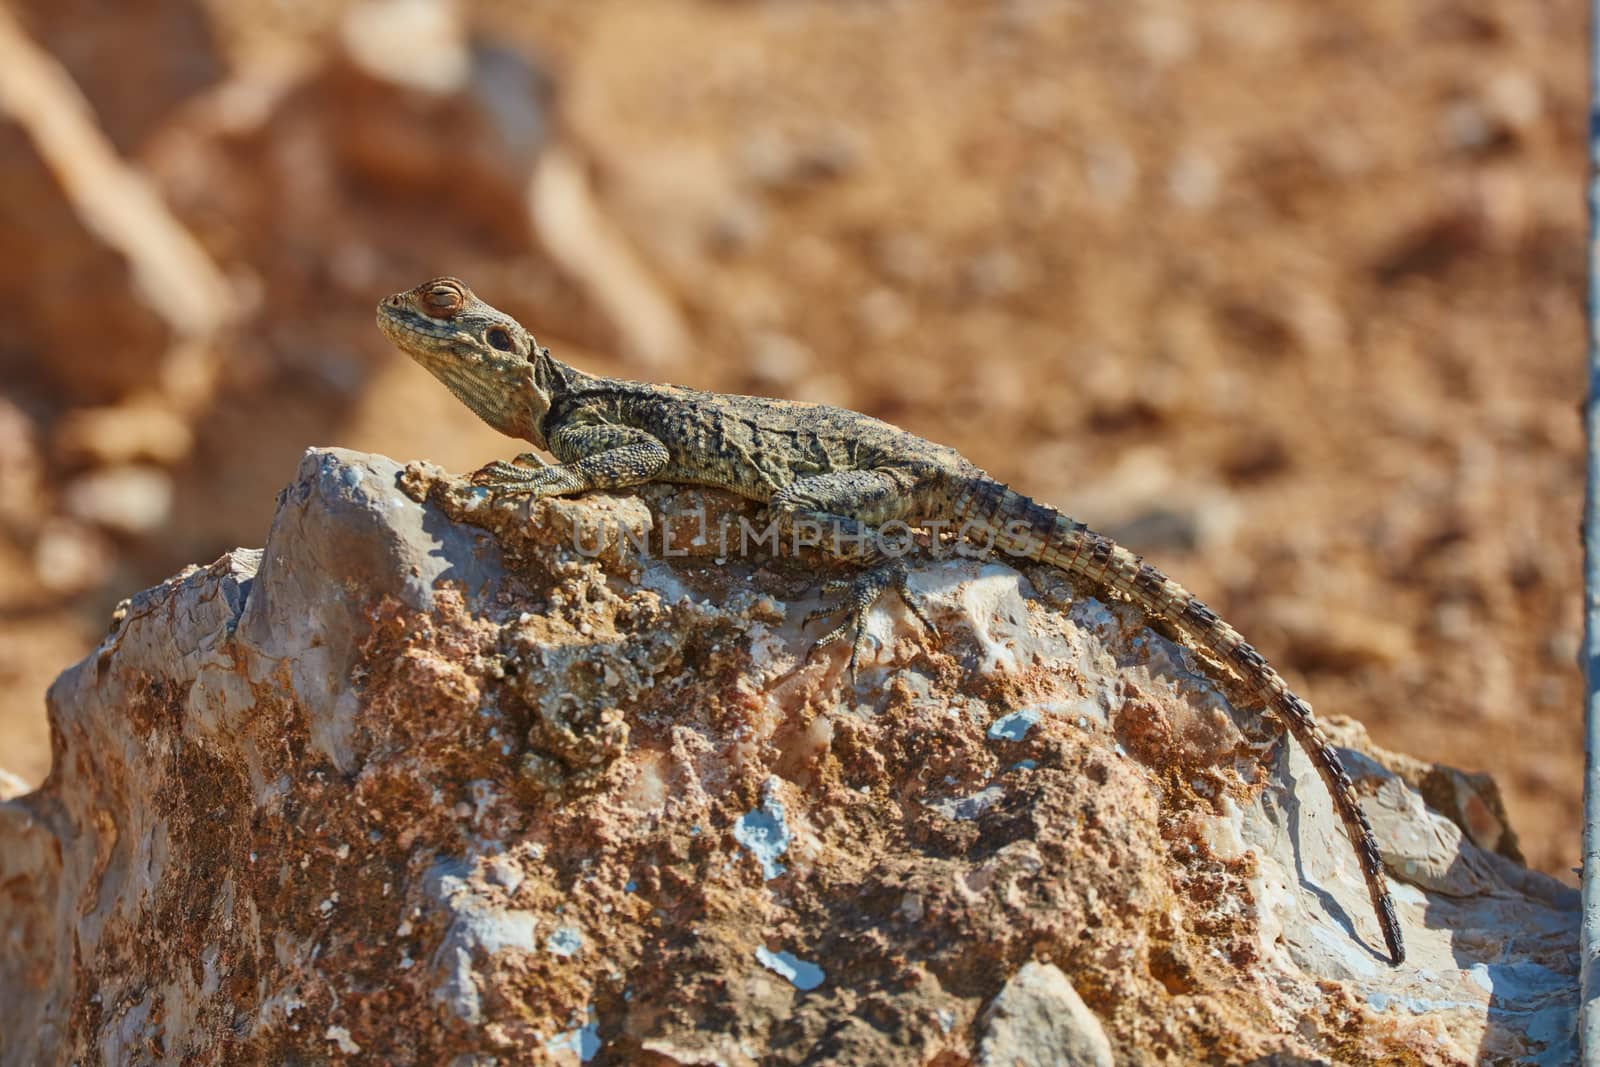 Stellion lizard sitting on a rock